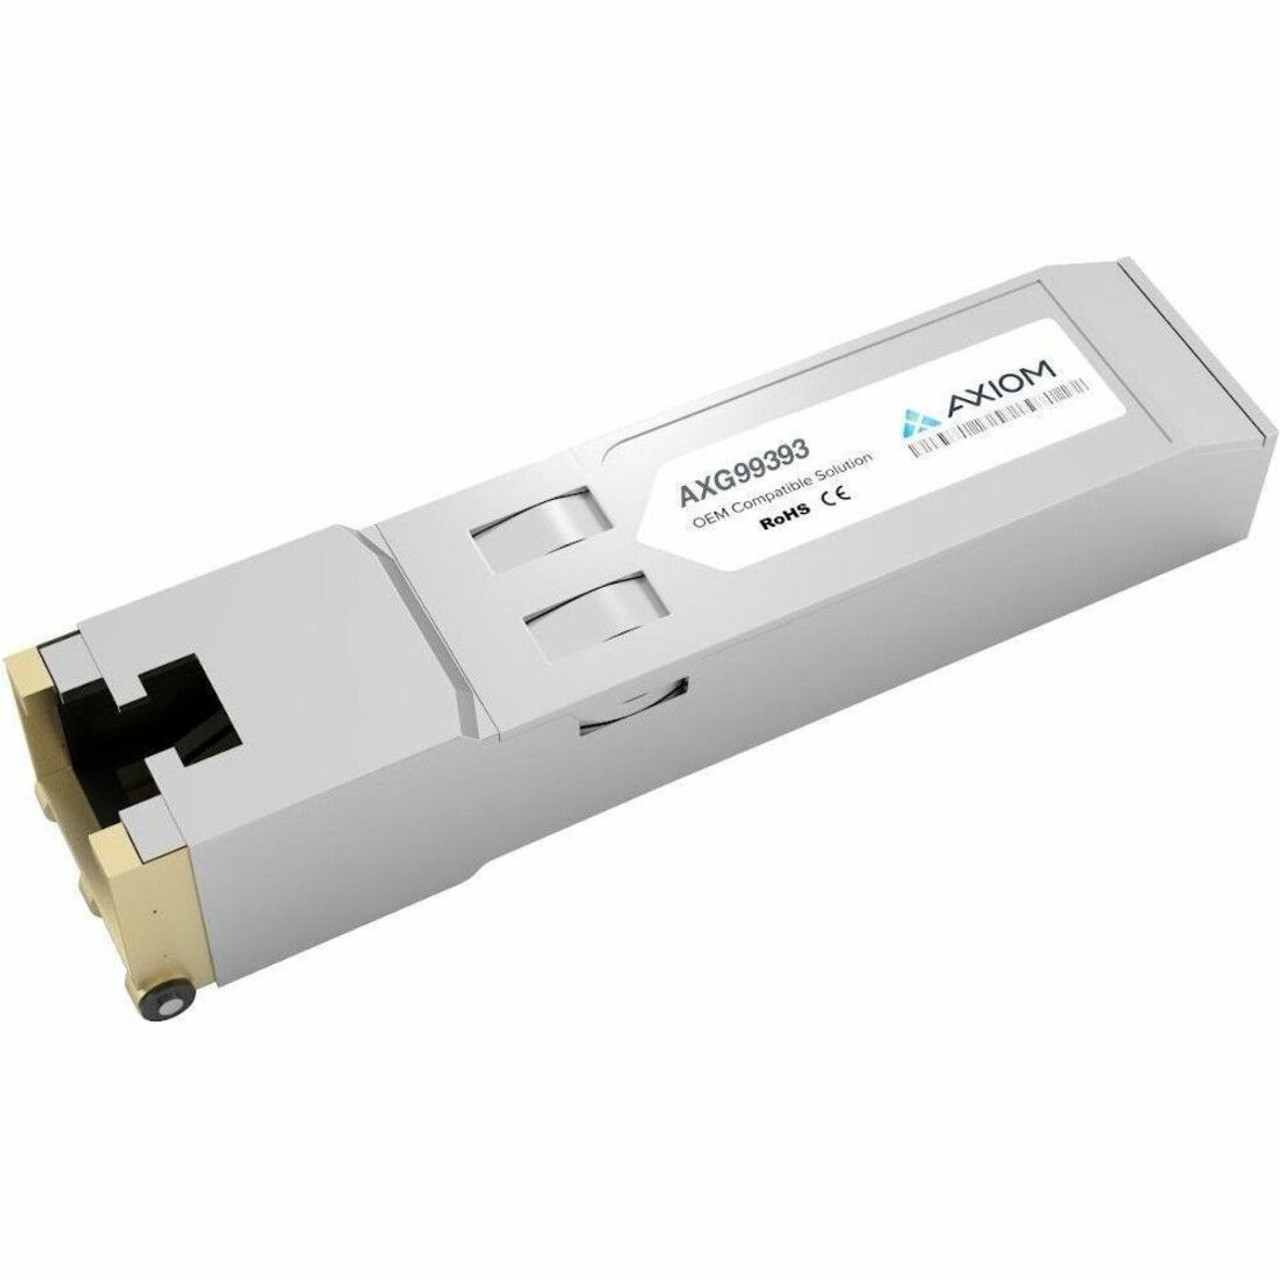 Axiom 10GBASE-T SFP+ Transceiver for Gigamon - SFP-531 - TAA Compliant - AXG99393